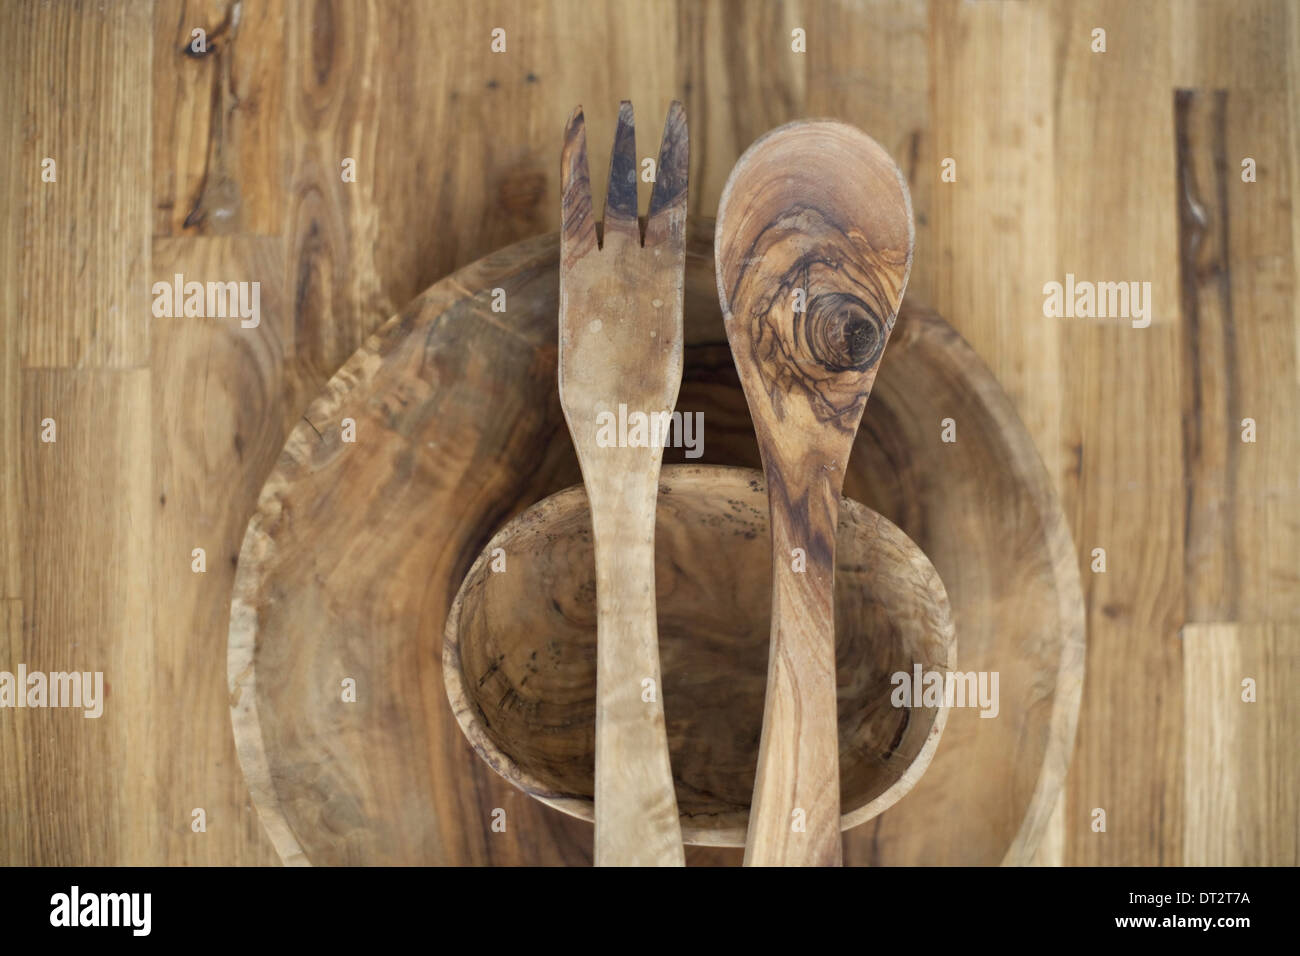 Eine hölzerne Tischplatte mit zwei gedrehten Schälchen und zwei hölzerne Salat Server Holzmaserung und natürlichen Muster Stockfoto